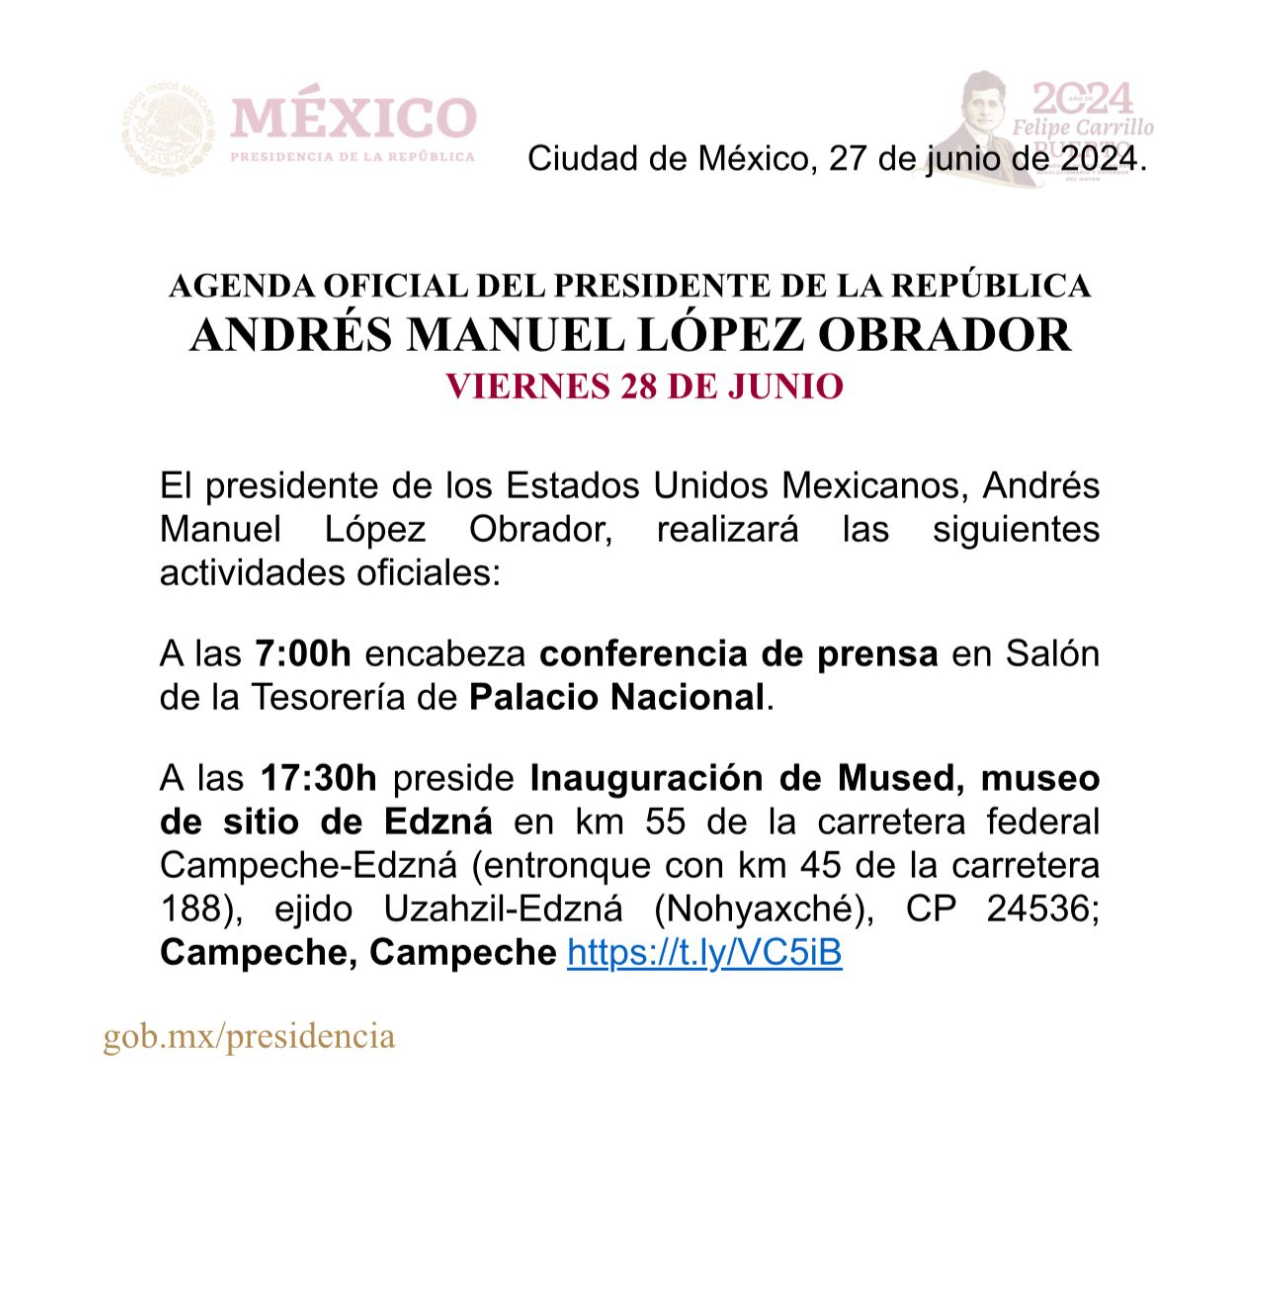 Agenda del presidente Andrés Manuel López Obrador para el viernes 28 de junio